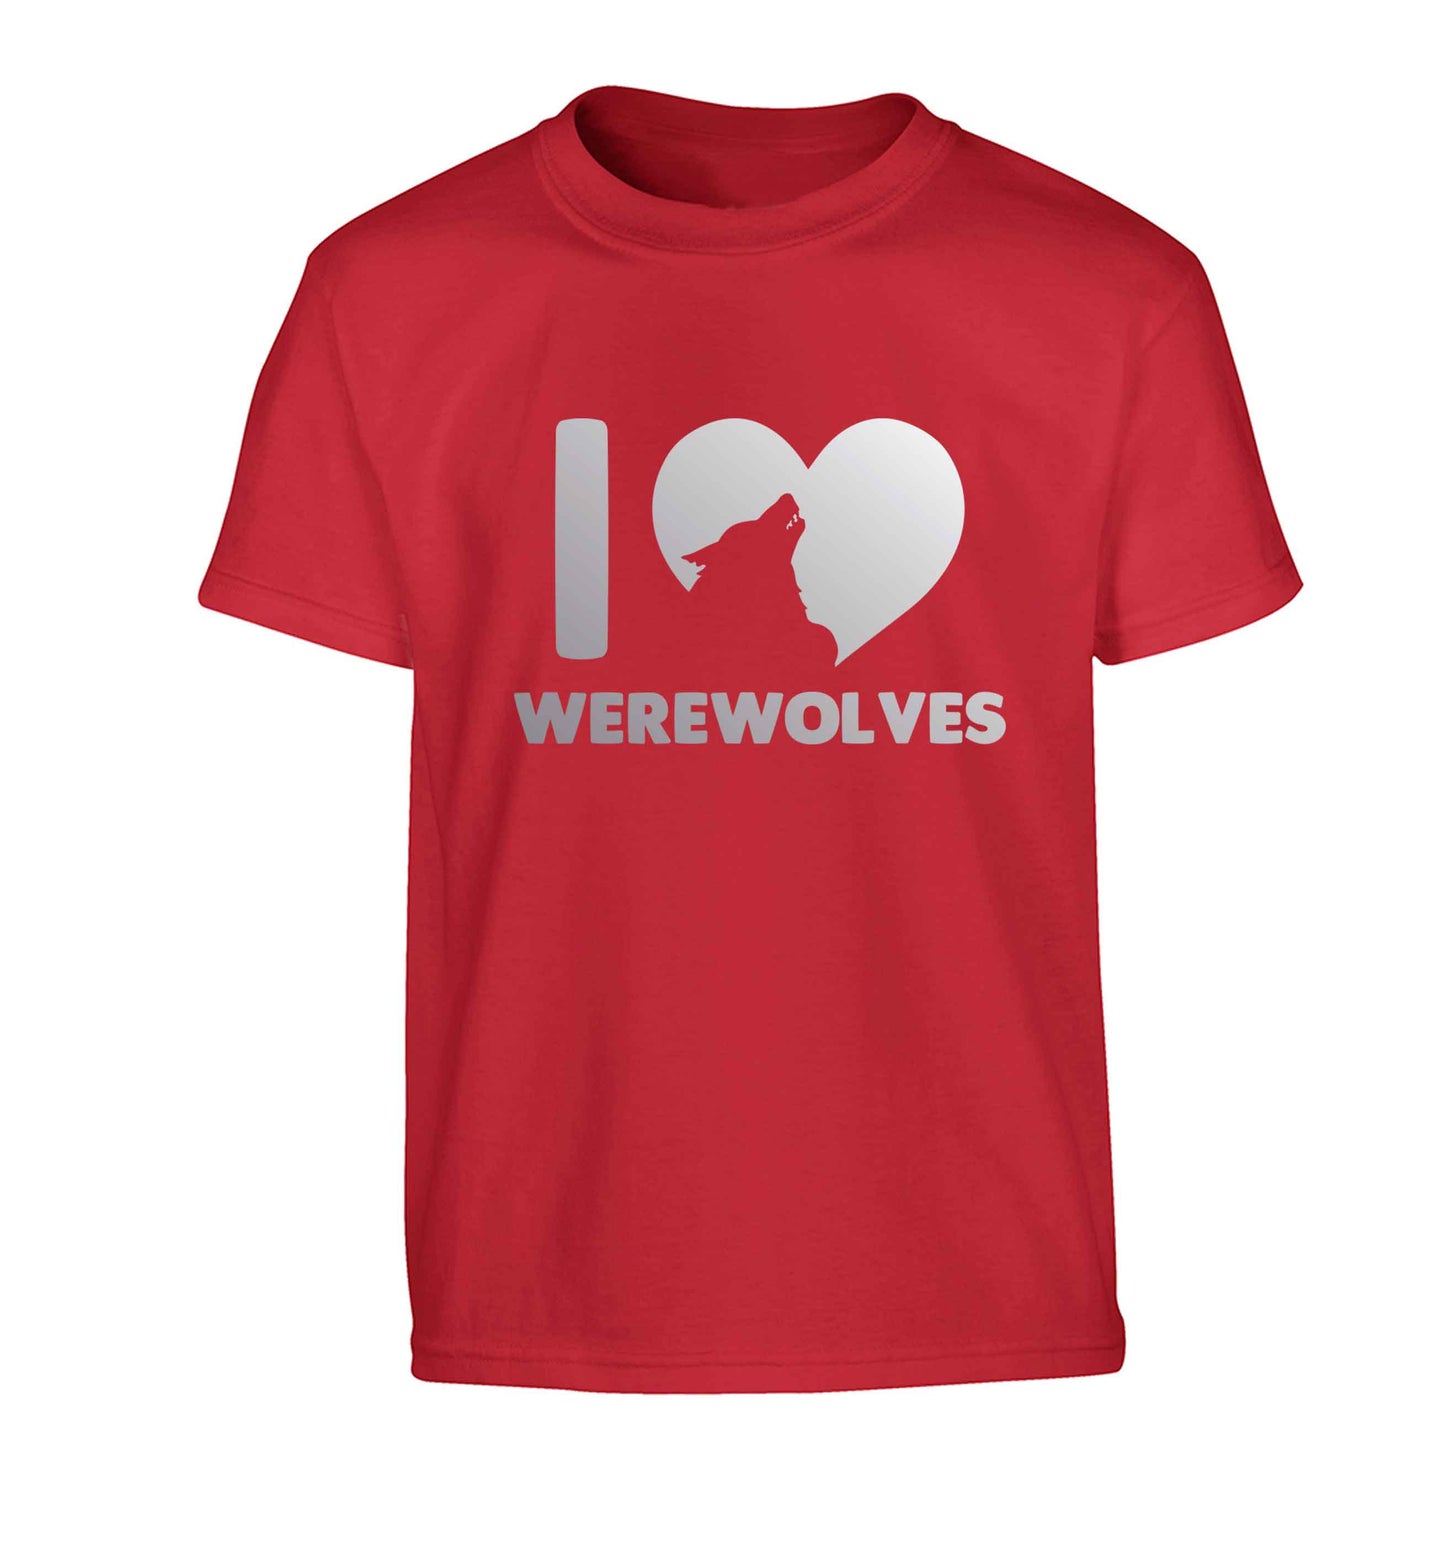 I love werewolves Children's red Tshirt 12-13 Years